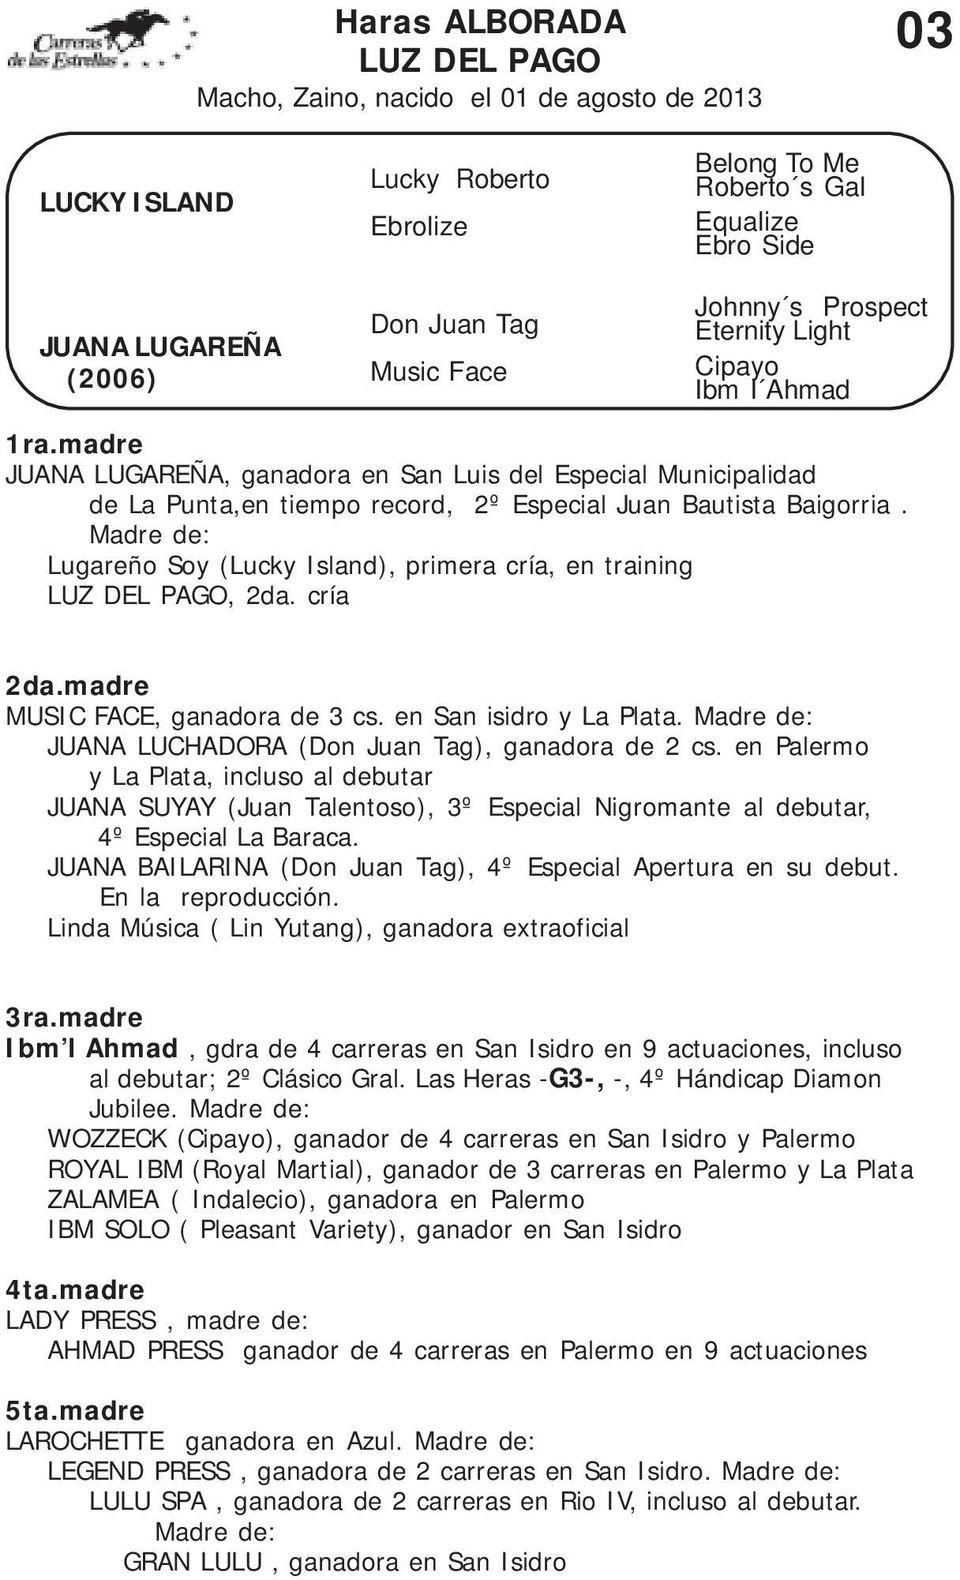 Madre de: Lugareño Soy (Lucky Island), primera cría, en training LUZ DEL PAGO, 2da. cría MUSIC FACE, ganadora de 3 cs. en San isidro y La Plata.